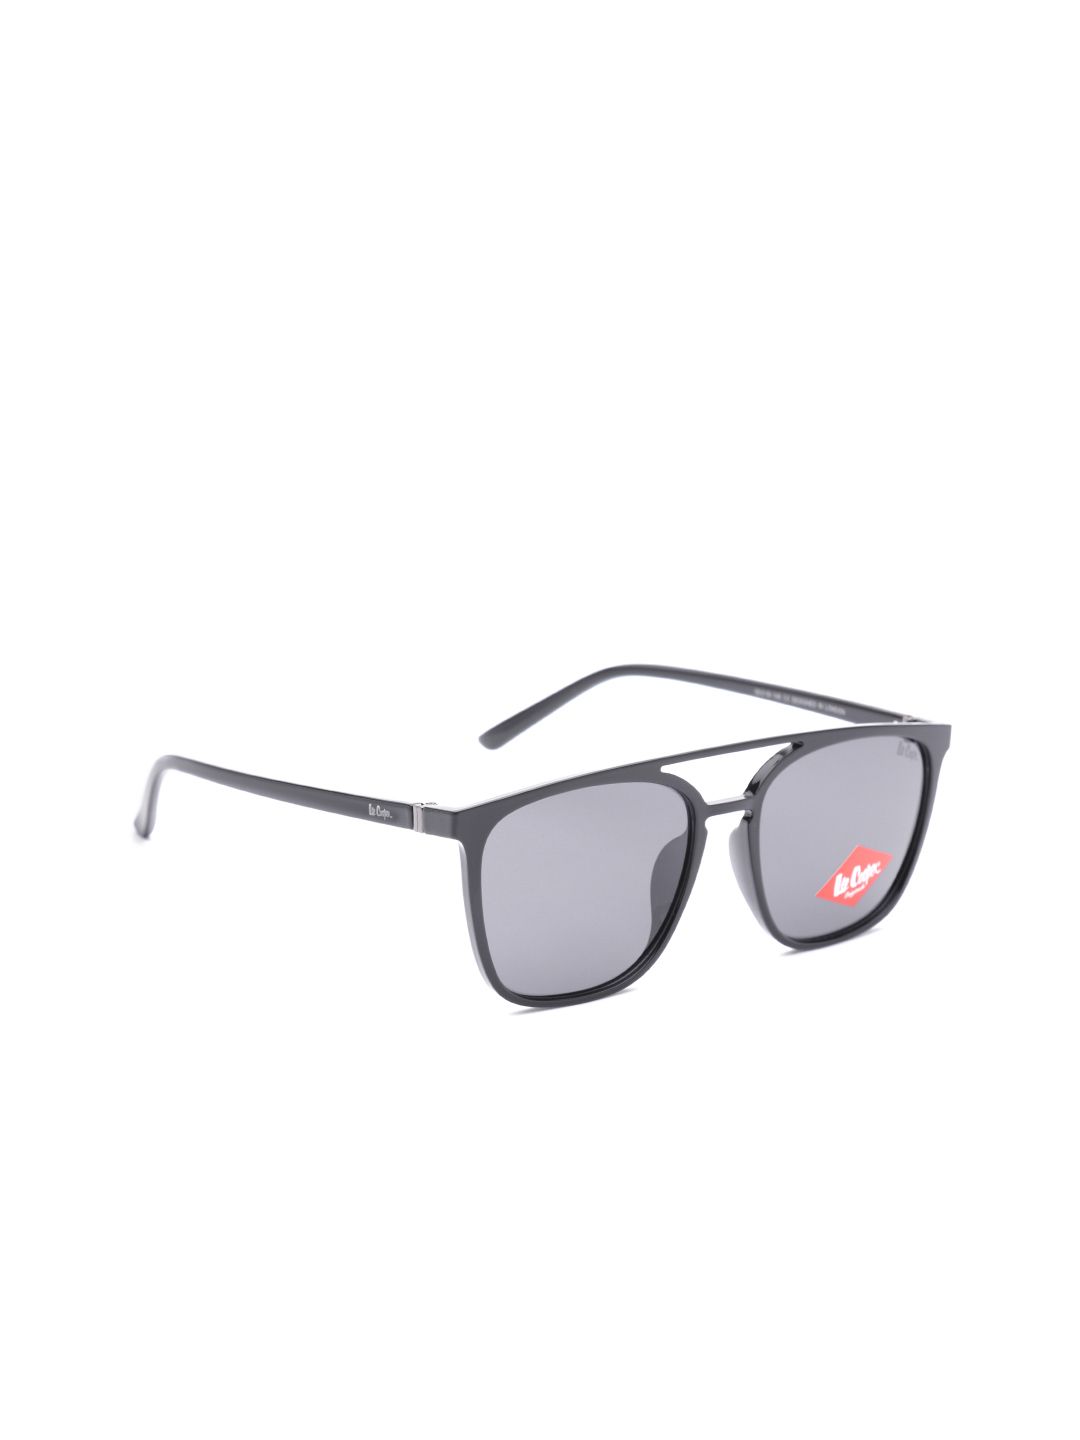 Lee Cooper Unisex Square Sunglasses LC9133ENB Price in India